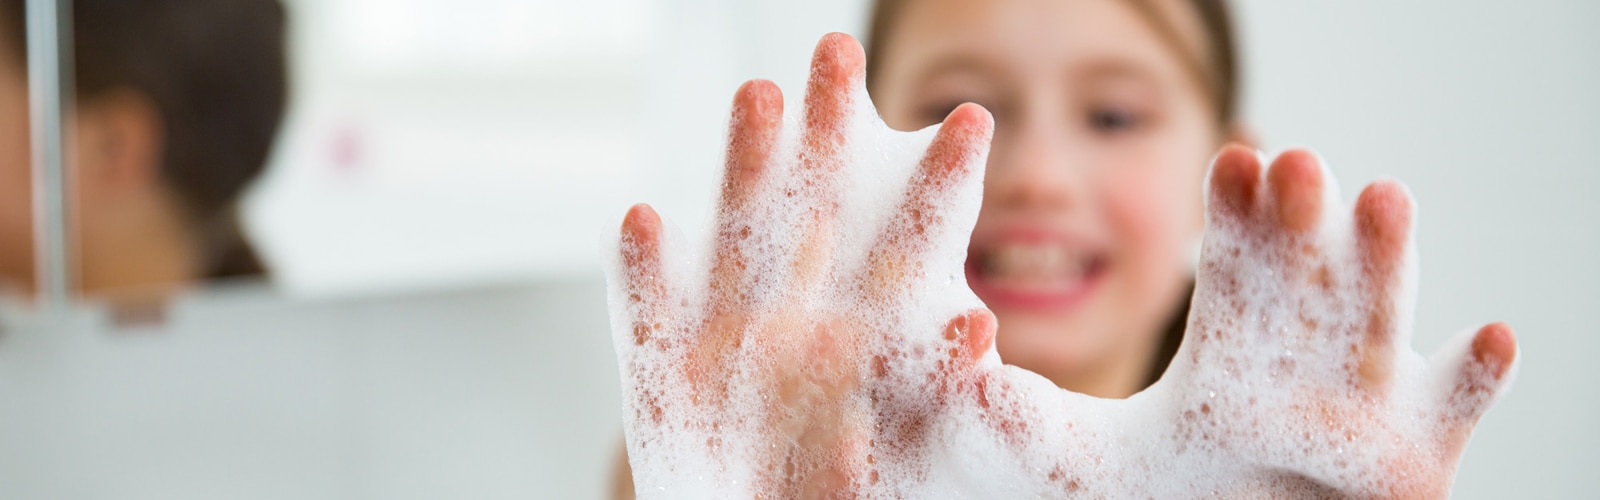 Girl's hands soaked in soap foam